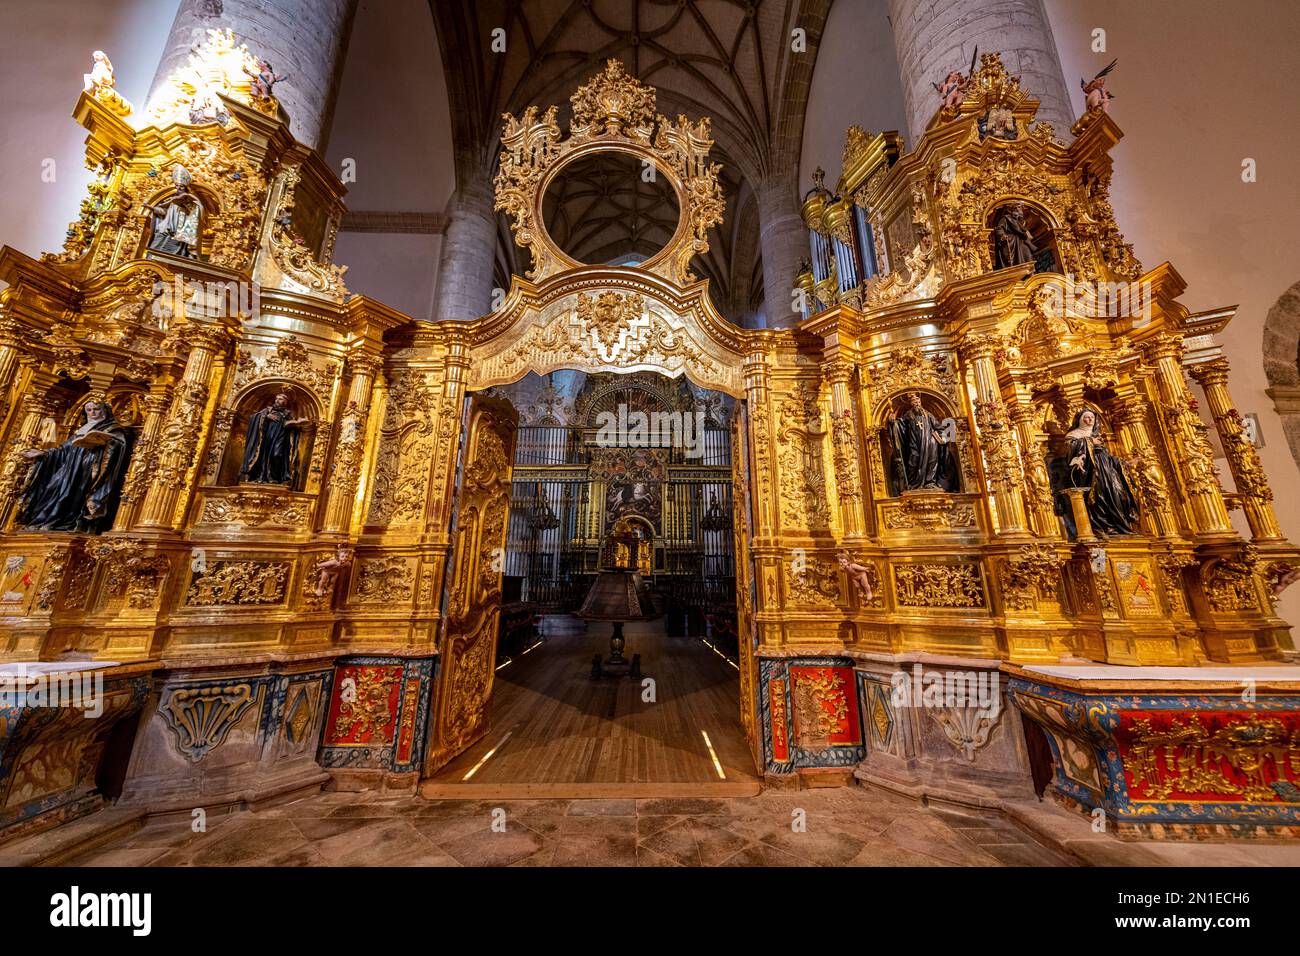 Entrée dorée à l'autel du monastère de Yuso, site classé au patrimoine mondial de l'UNESCO, monastères de San Millan de la Cogolla, la Rioja, Espagne, Europe Banque D'Images